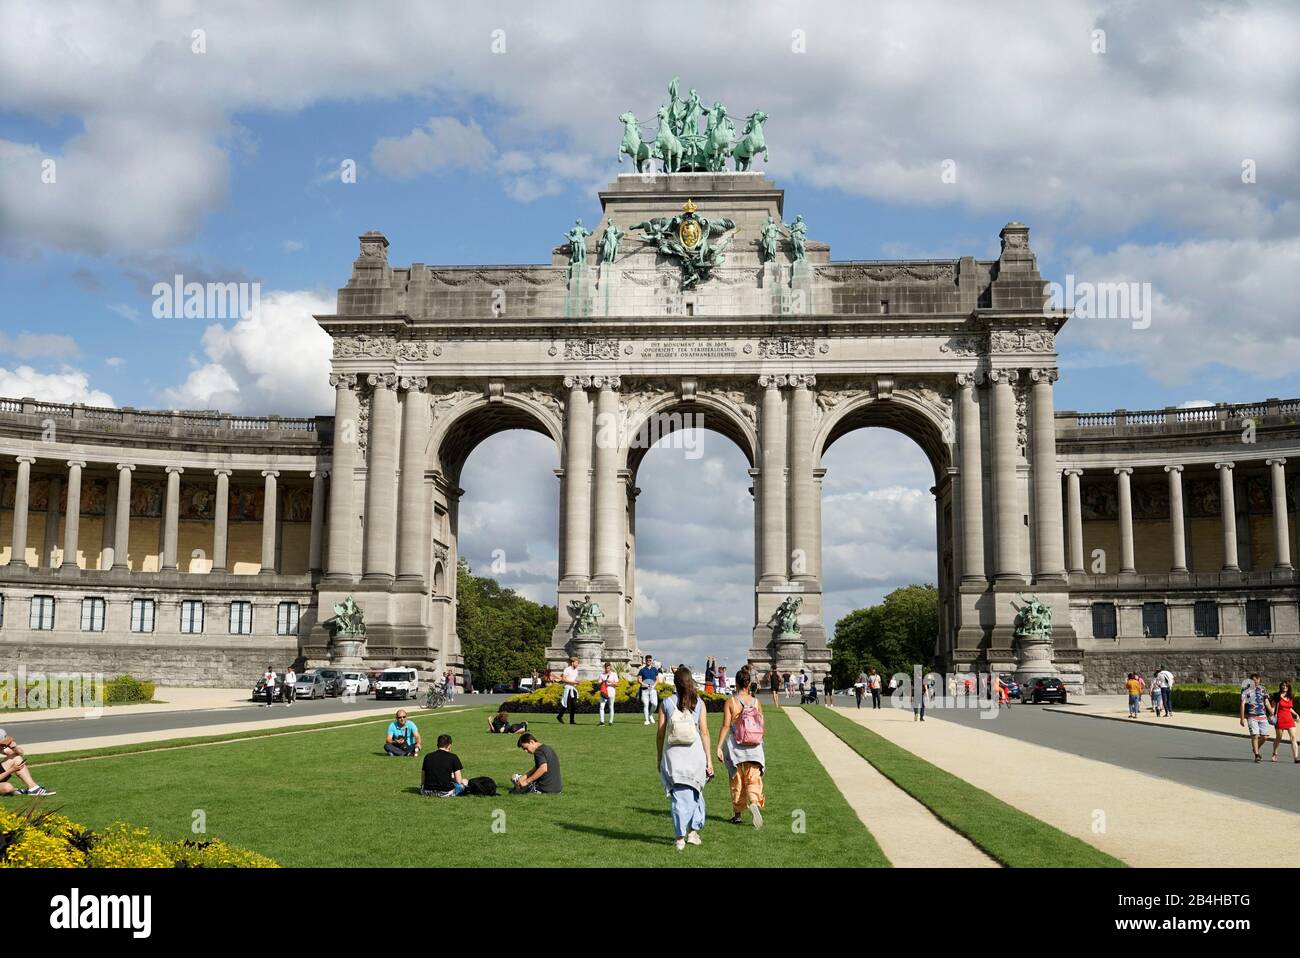 Europe, Belgium, Brussels, Parc du Cinquantenaire, jubilee park, triumphal arch, meadow, young people Stock Photo